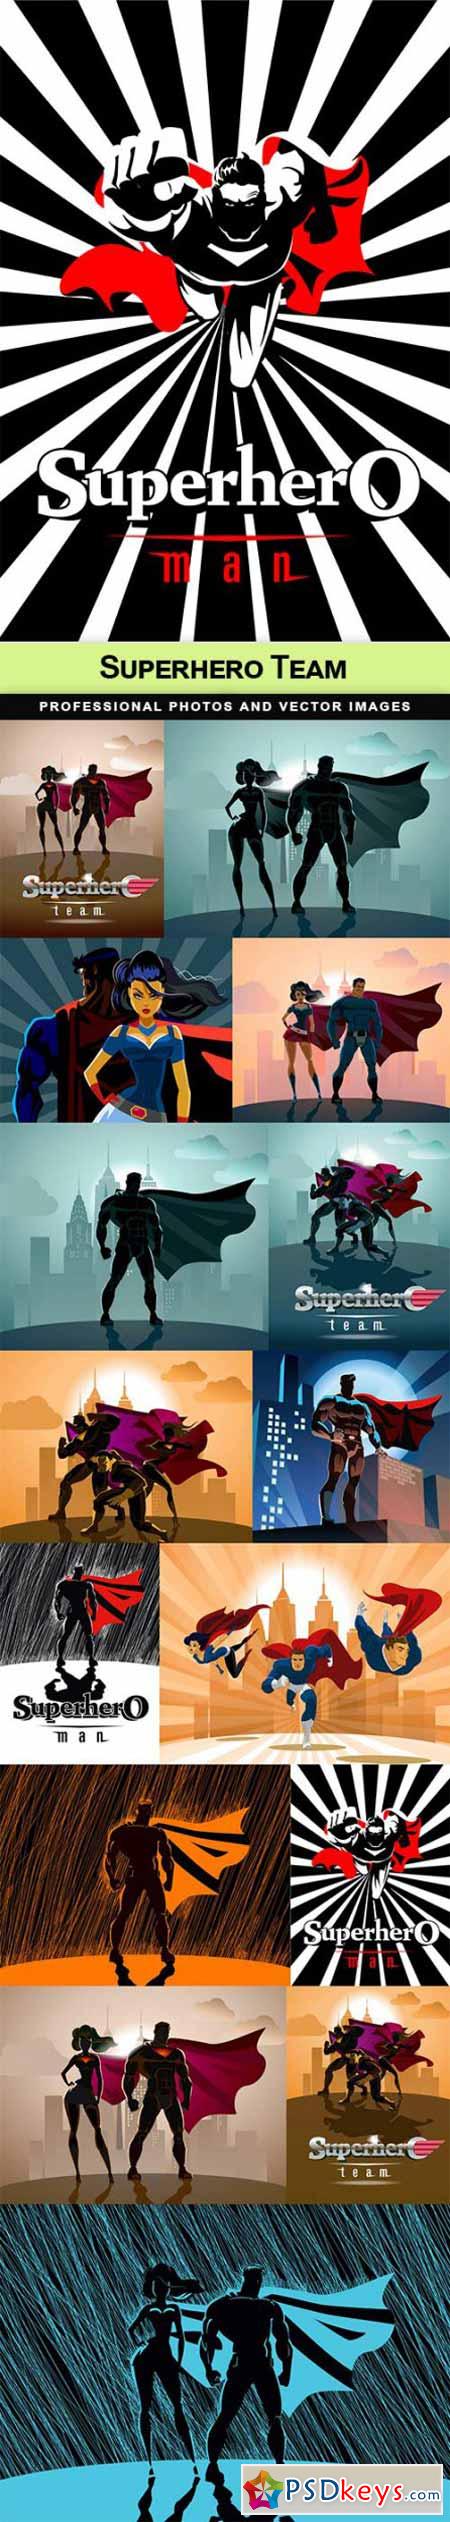 Superhero Team - 15 EPS